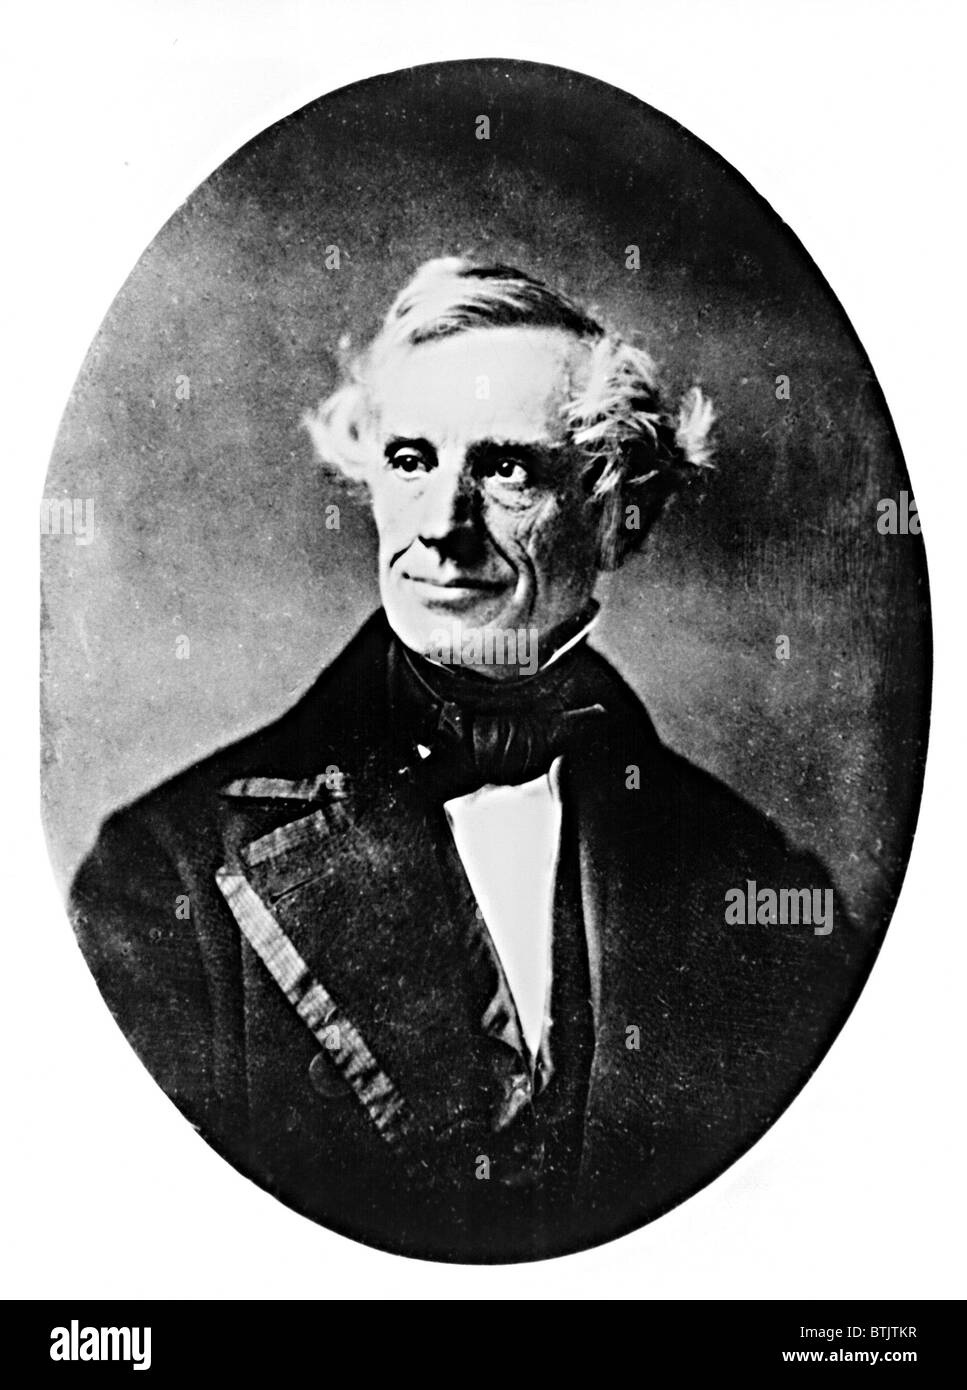 SAMUEL F.B. MORSE, Erfinder der Stahl Telegraphendrähten, Fernschreiber Maschinen und Morse-Code, ca. 1857.  Everett/CSU Archive. Stockfoto